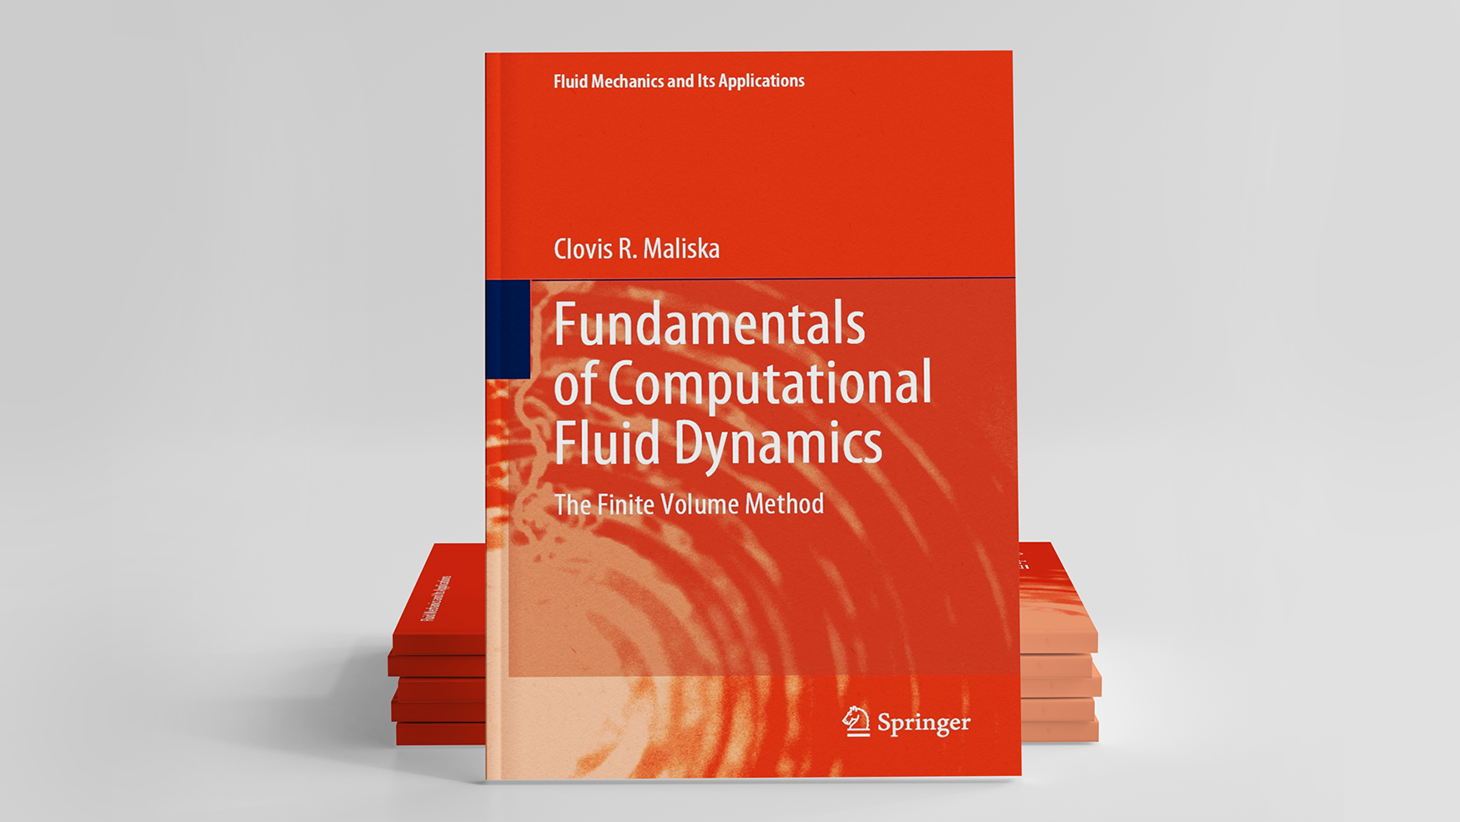 Conoce el libro Fundamentals of Computational Fluid Dynamics: The Finite Volume Method, escrito por el profesor Clovis R. Maliska